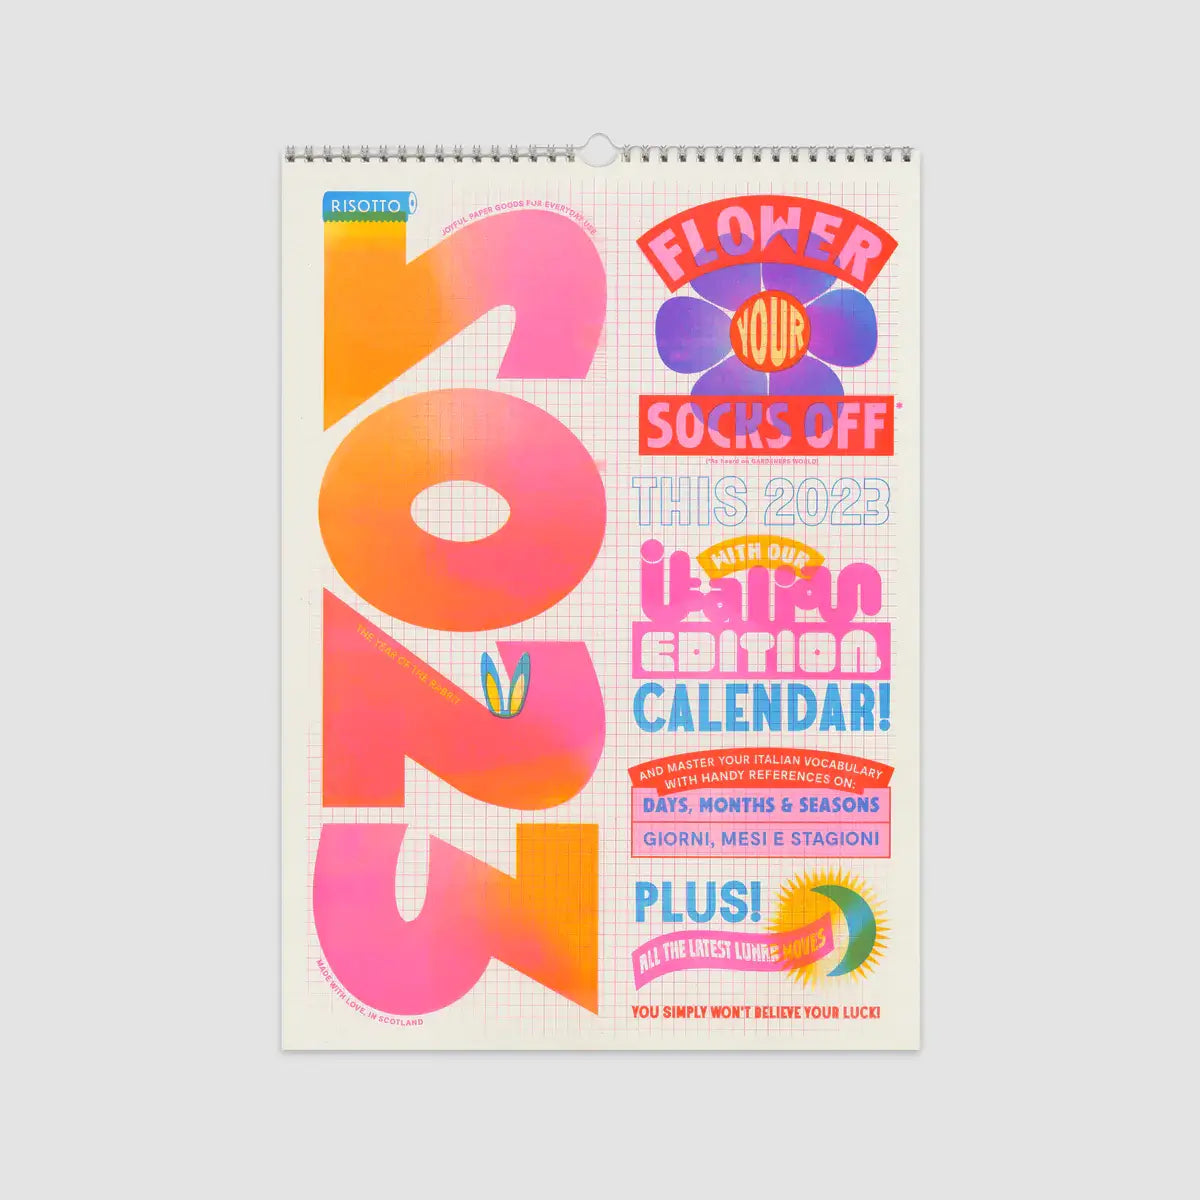 Risotto Studio 2023 Calendar